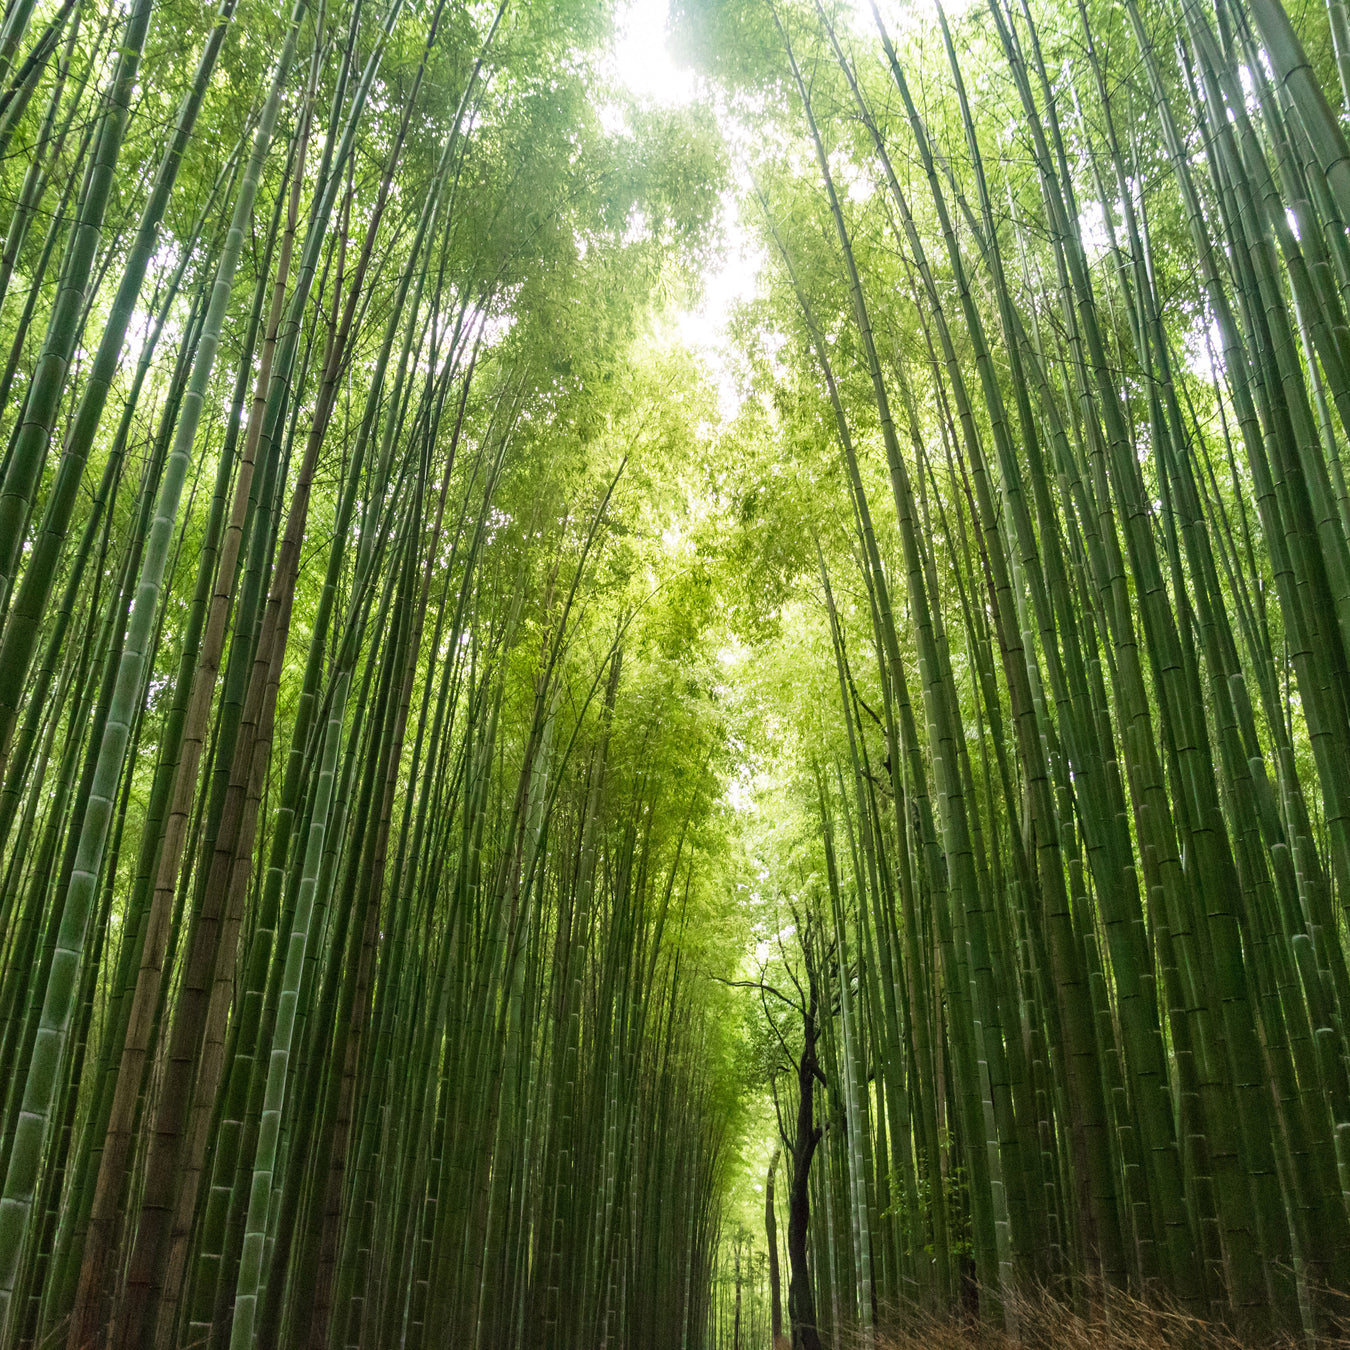 Sustaining Bamboo